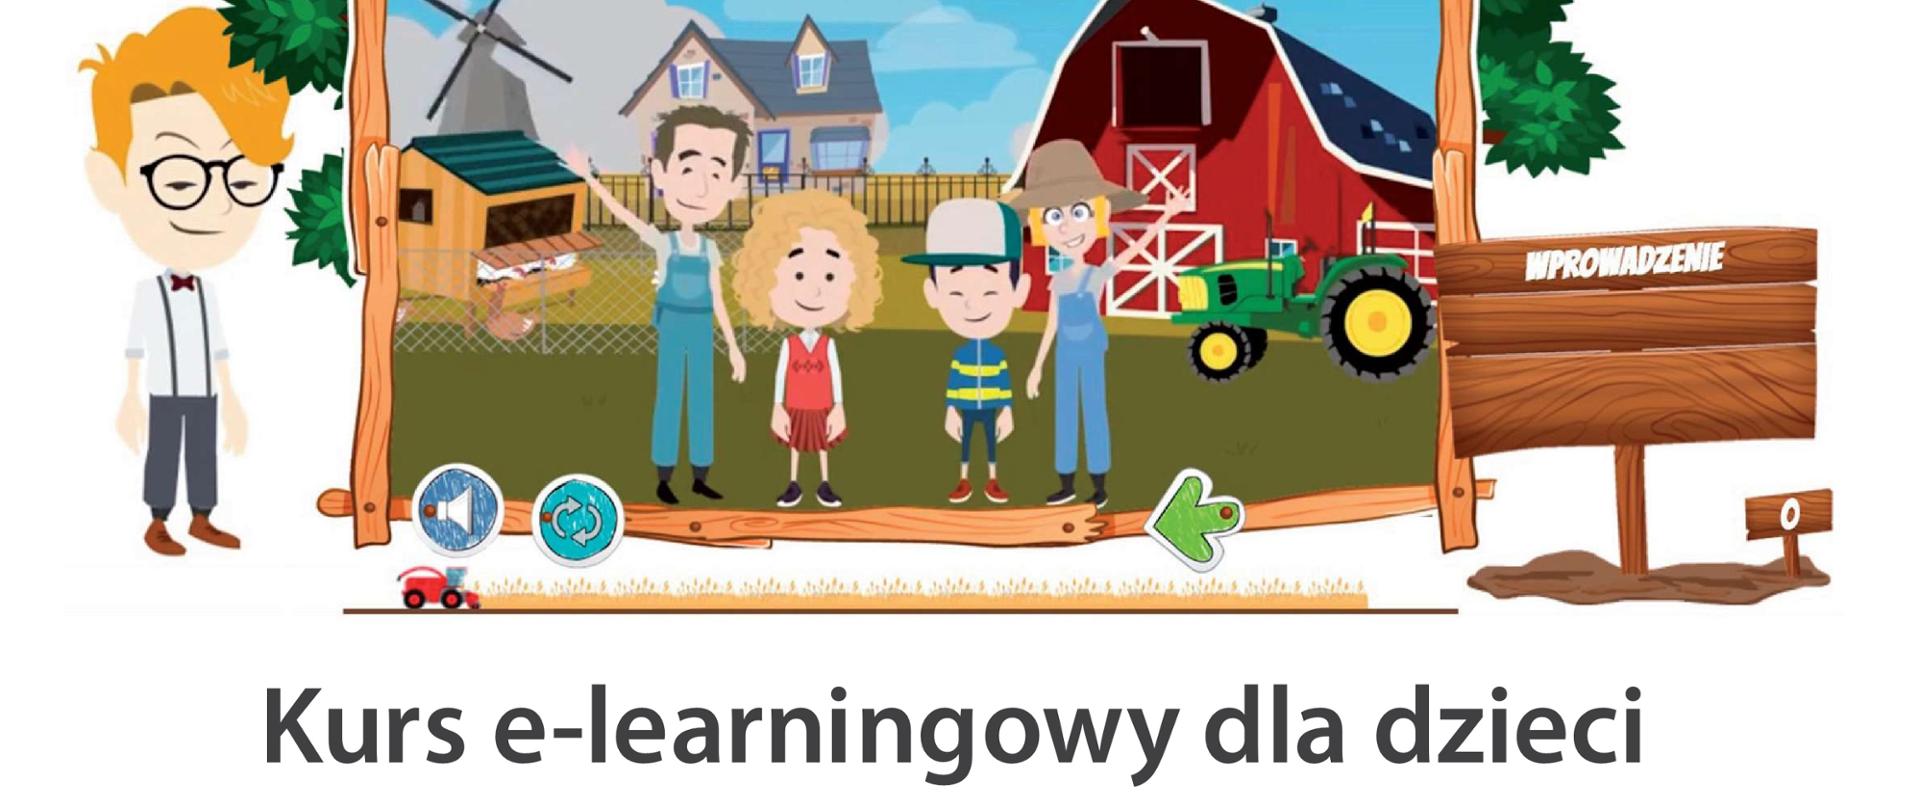 Kurs e-learningowy dla dzieci